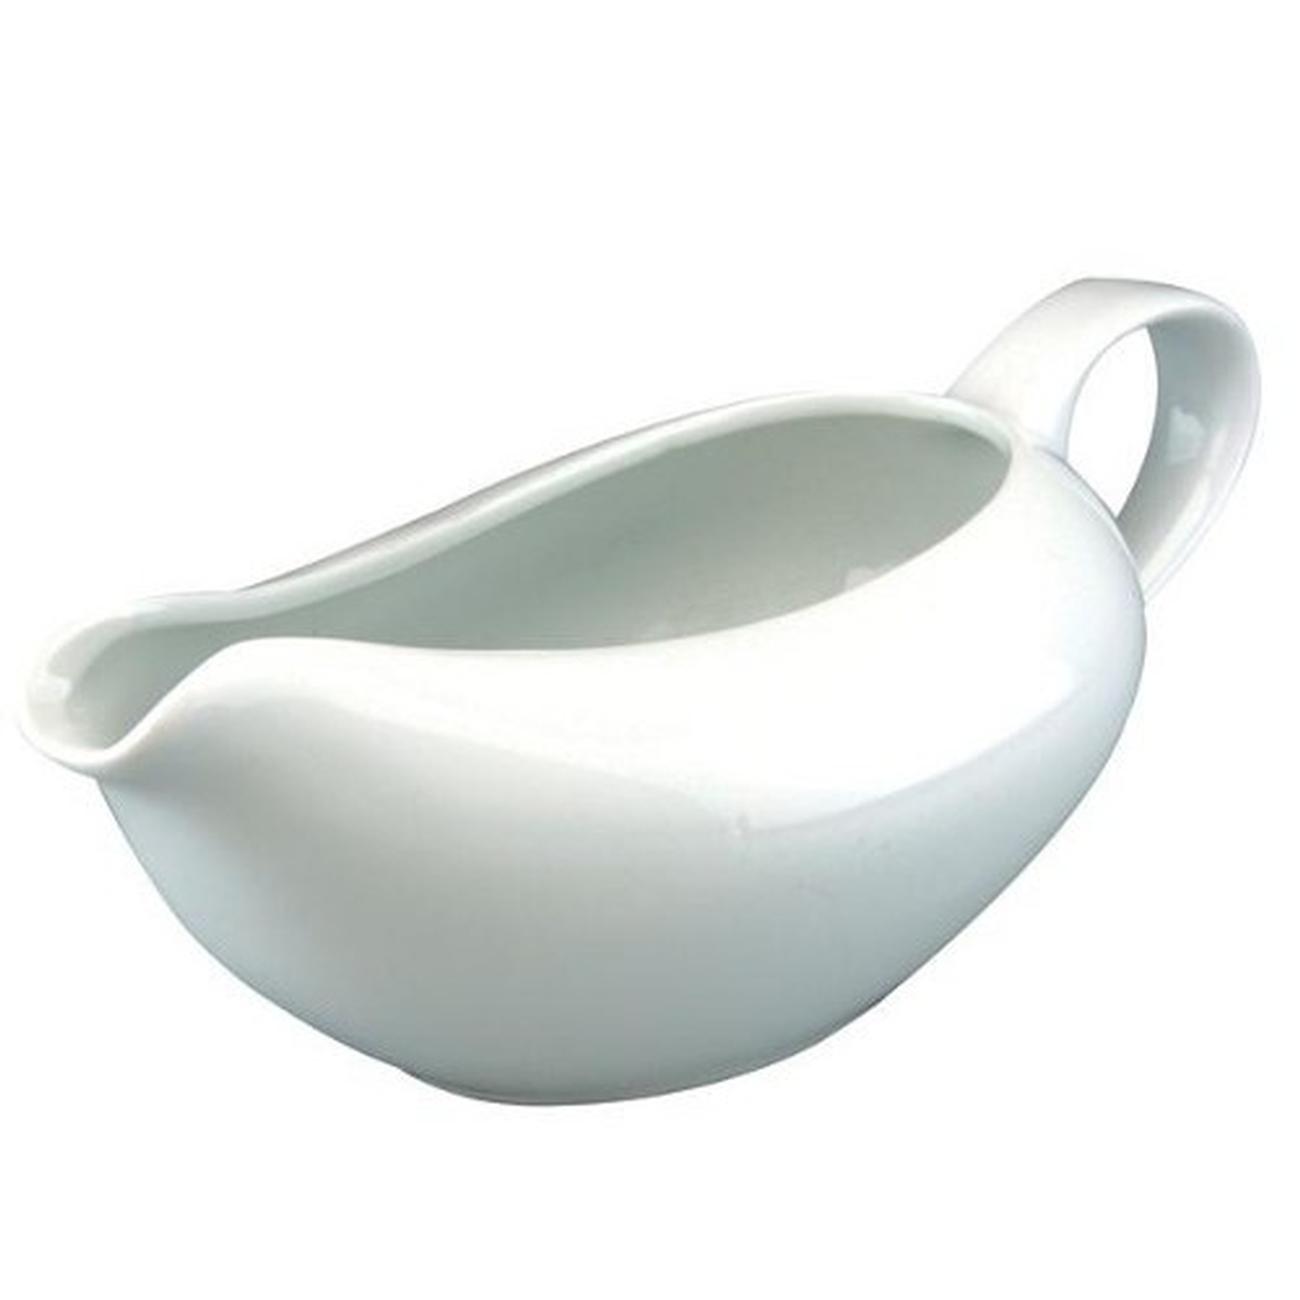 apollo-gravy-boat-wide-500ml-ceramic - Apollo Porcelain Gravy Boat 500ml